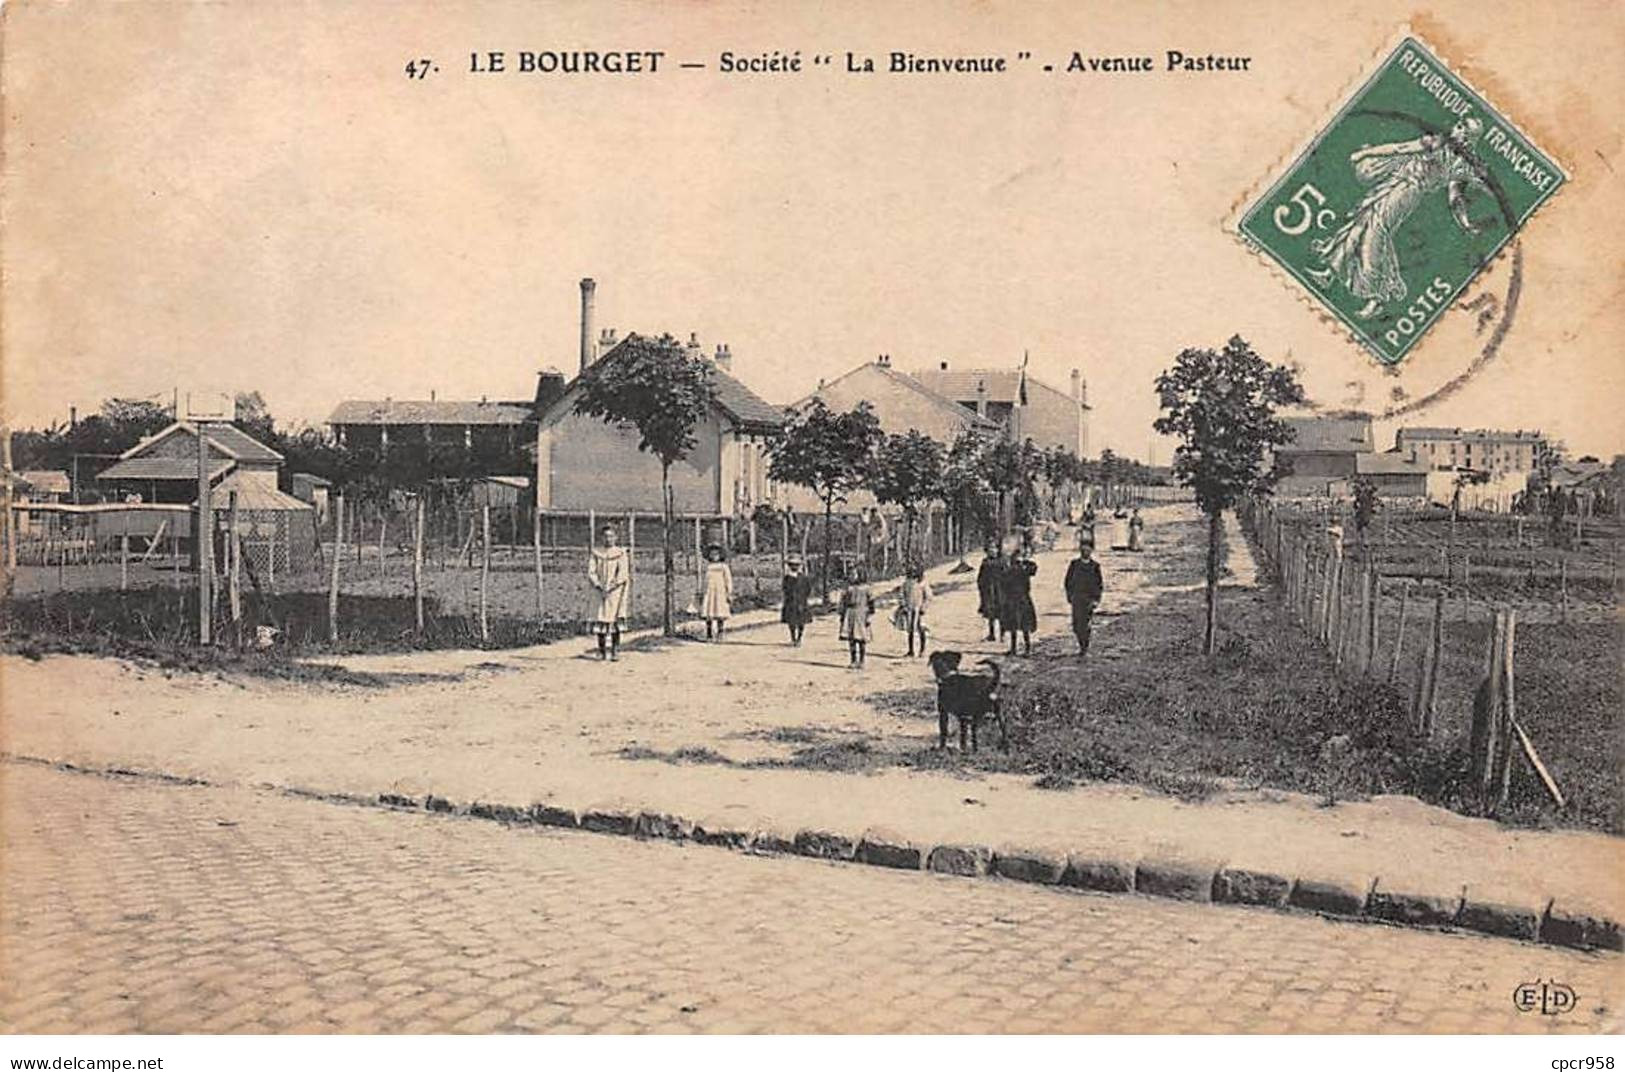 93 - LE BOURGET - SAN57581 - Société "La Bienvenue" - Avenue Pasteur - Le Bourget